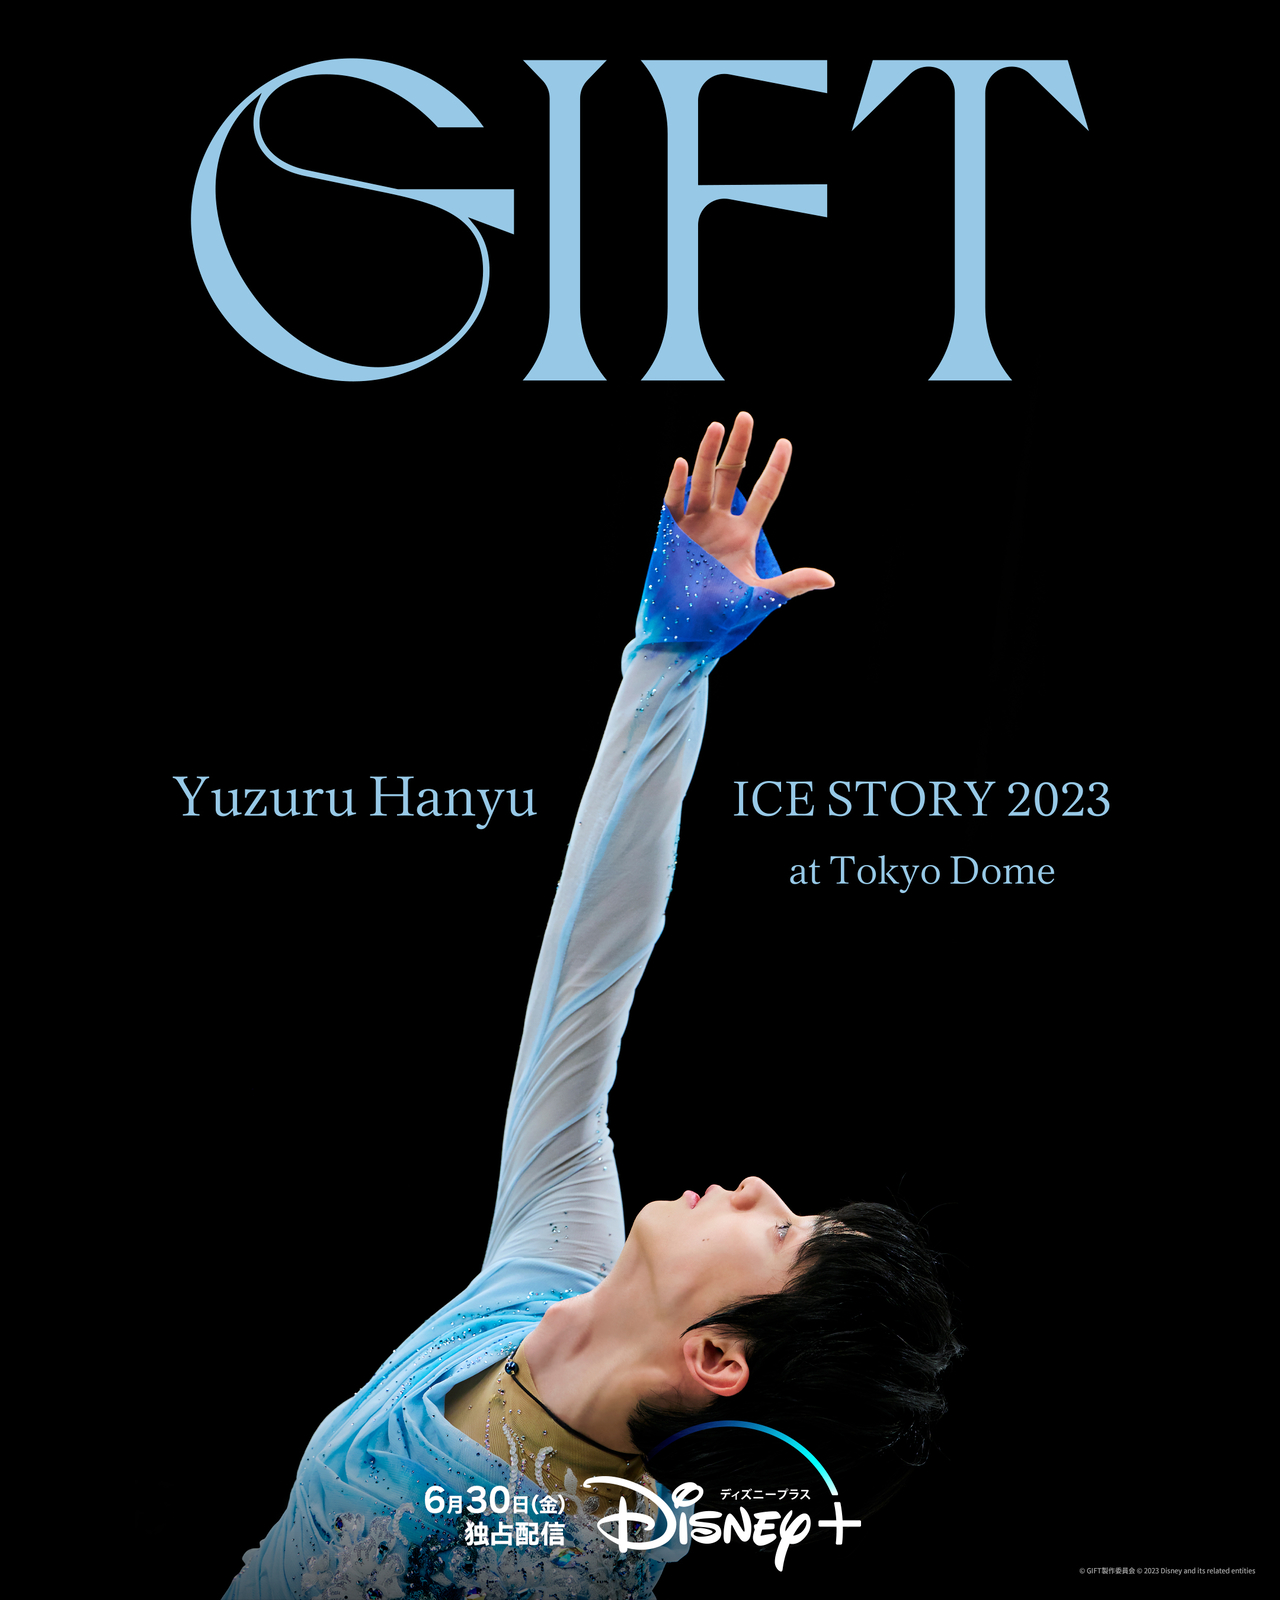 羽生結弦の東京ドーム公演“GIFT”特別編、ディズニープラスで6月30日 